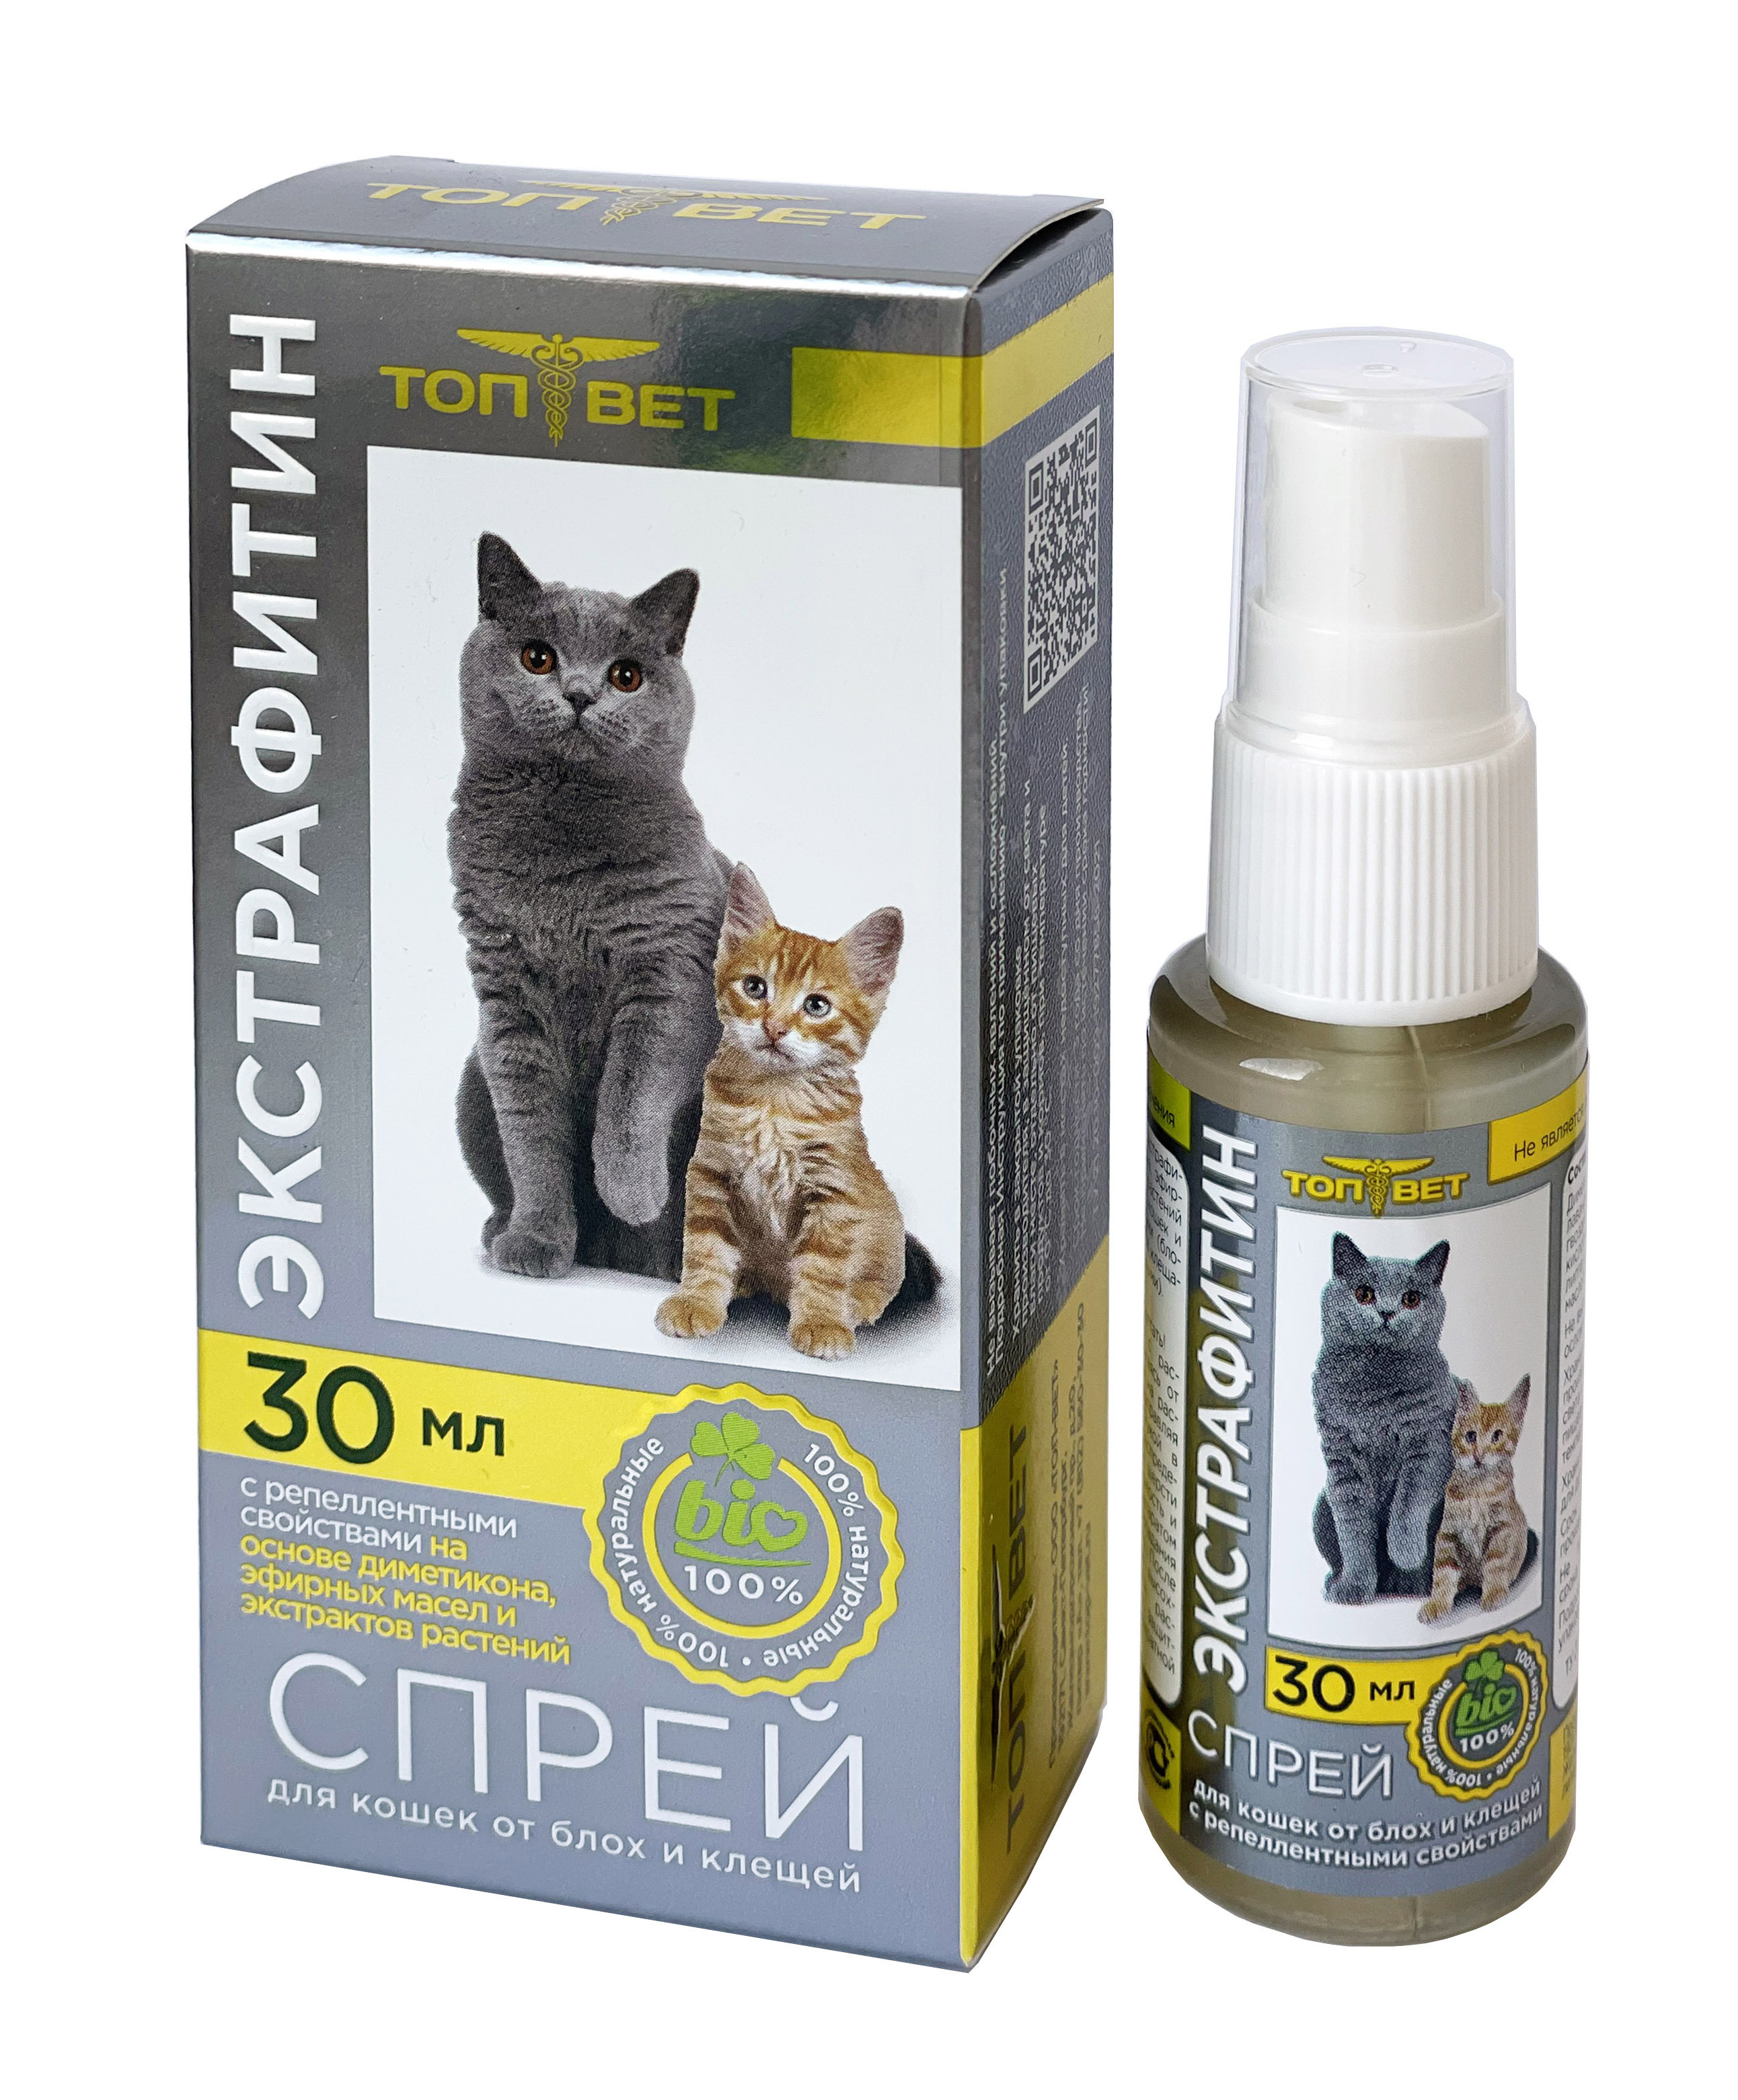 Акаромектин Спрей для Кошек – купить в интернет-магазине OZON по низкой цене